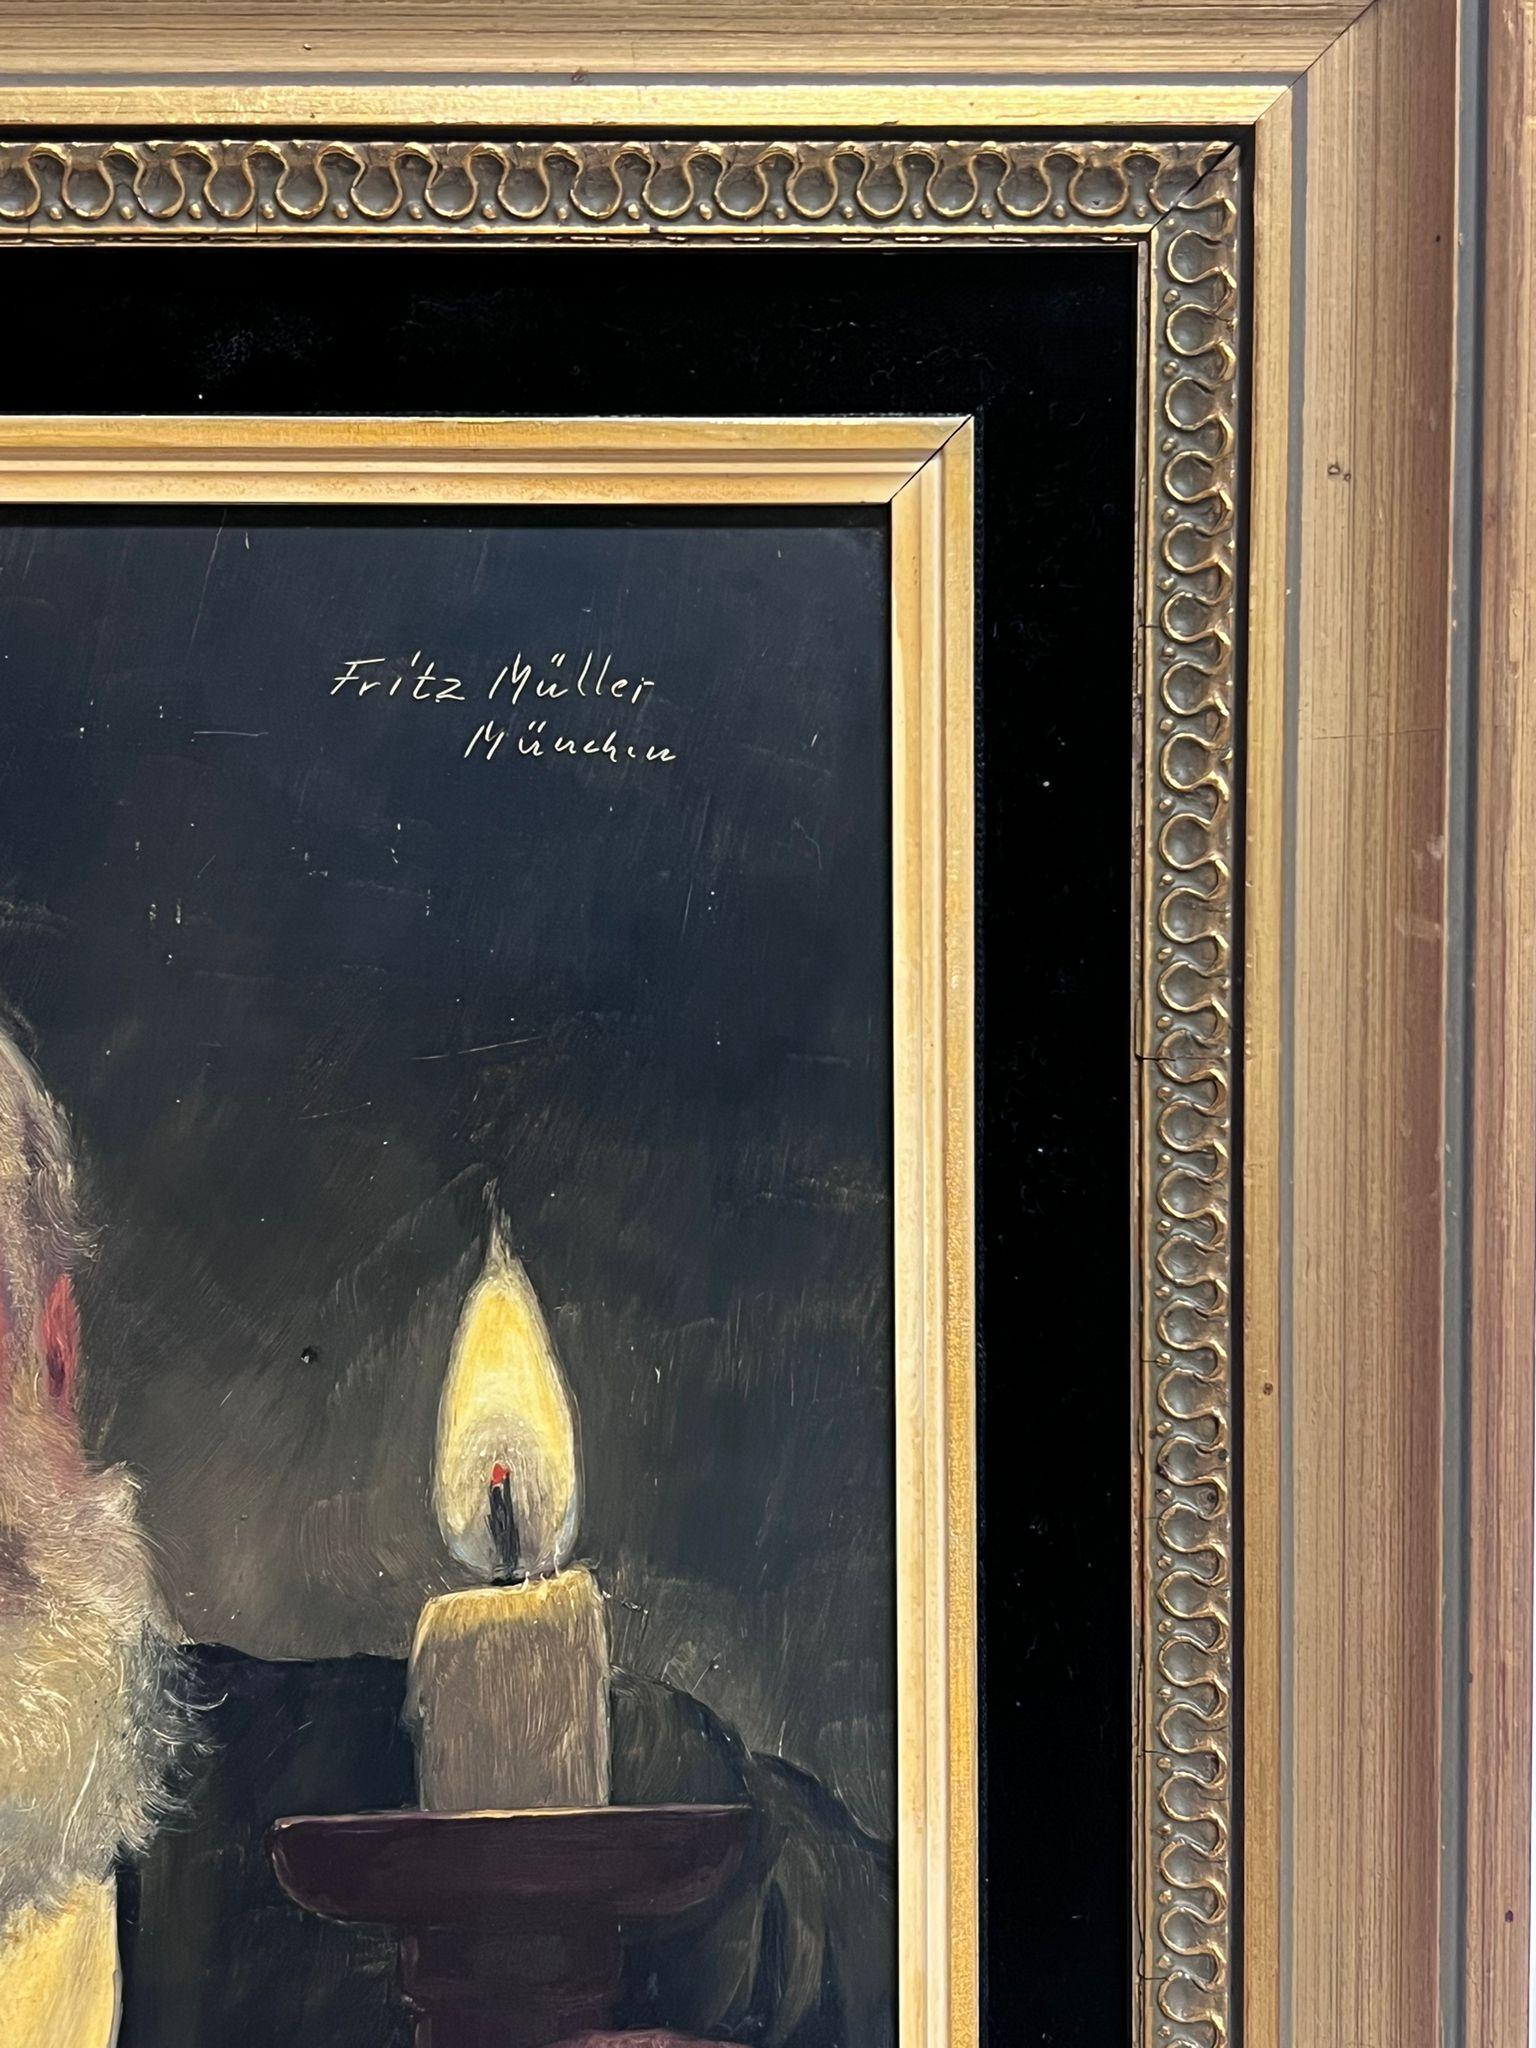 Bavarianischer Gentleman, der eine Kerze hält, feines deutsches Ölgemälde, Porträt eines Mannes – Painting von Fritz Muller